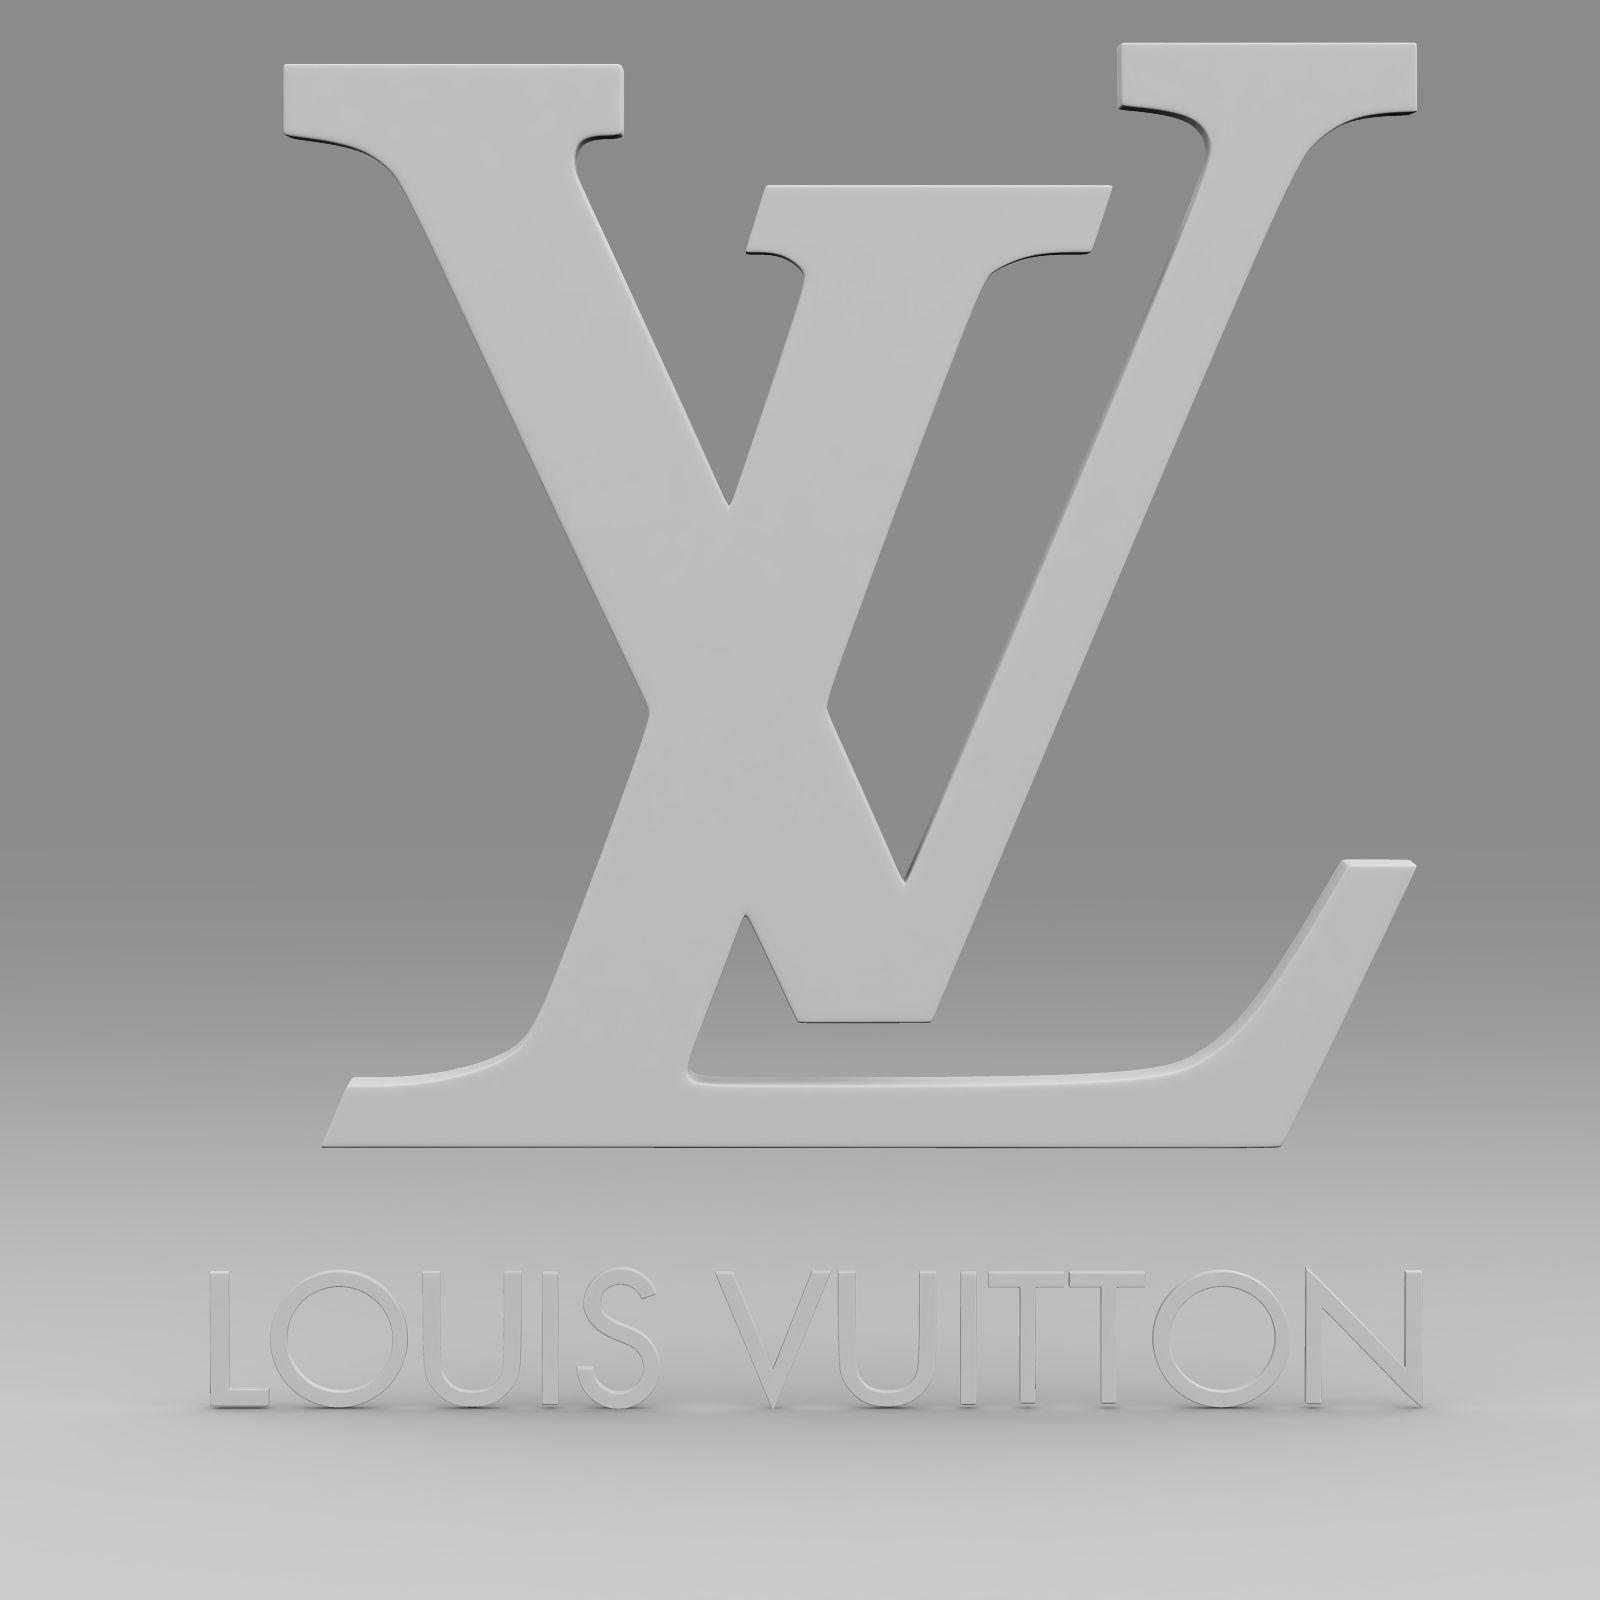 Louis Vuitton Logo - Louis Vuitton logo 2 3D | CGTrader